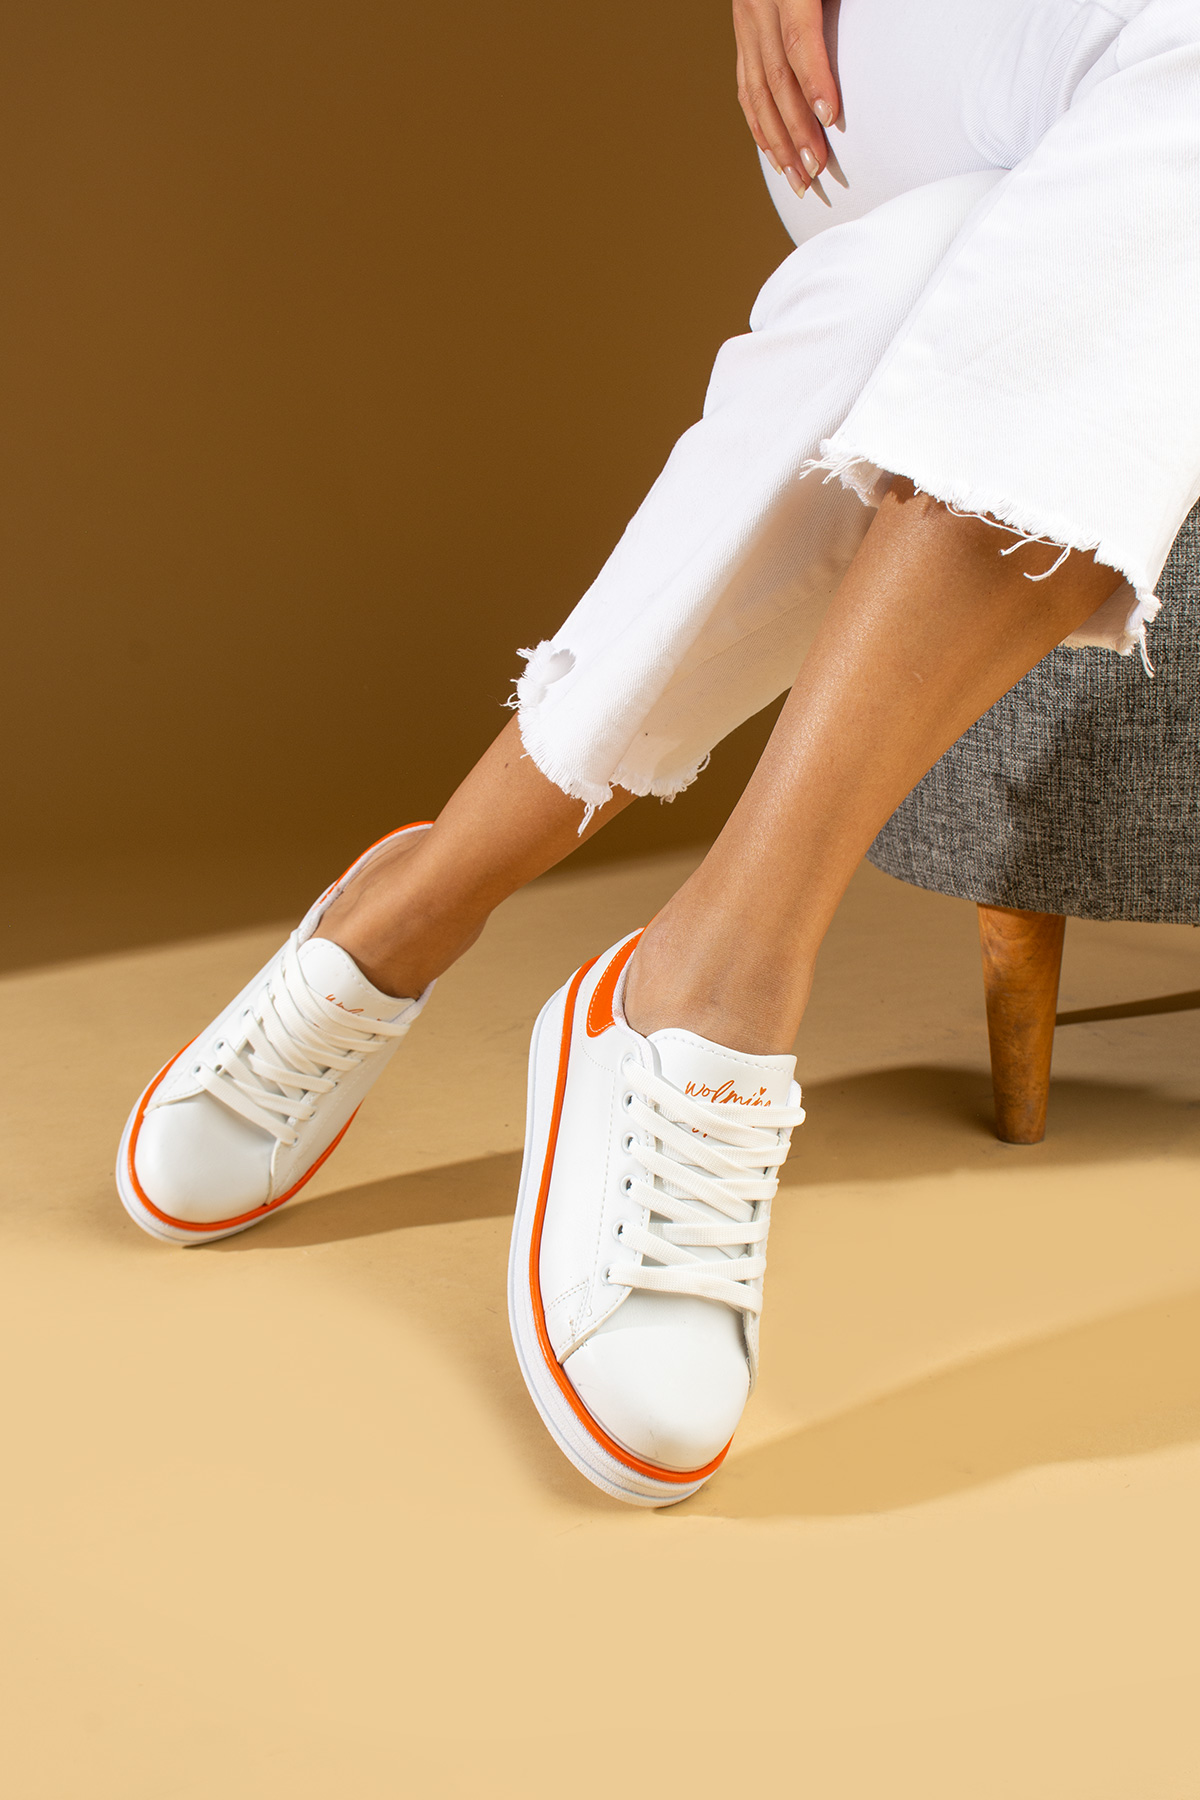 Pembe Potin Rahat Taban Renk Şeritli Bağcıklı Kadın Sneaker 001-340-24BTuruncu - Beyaz